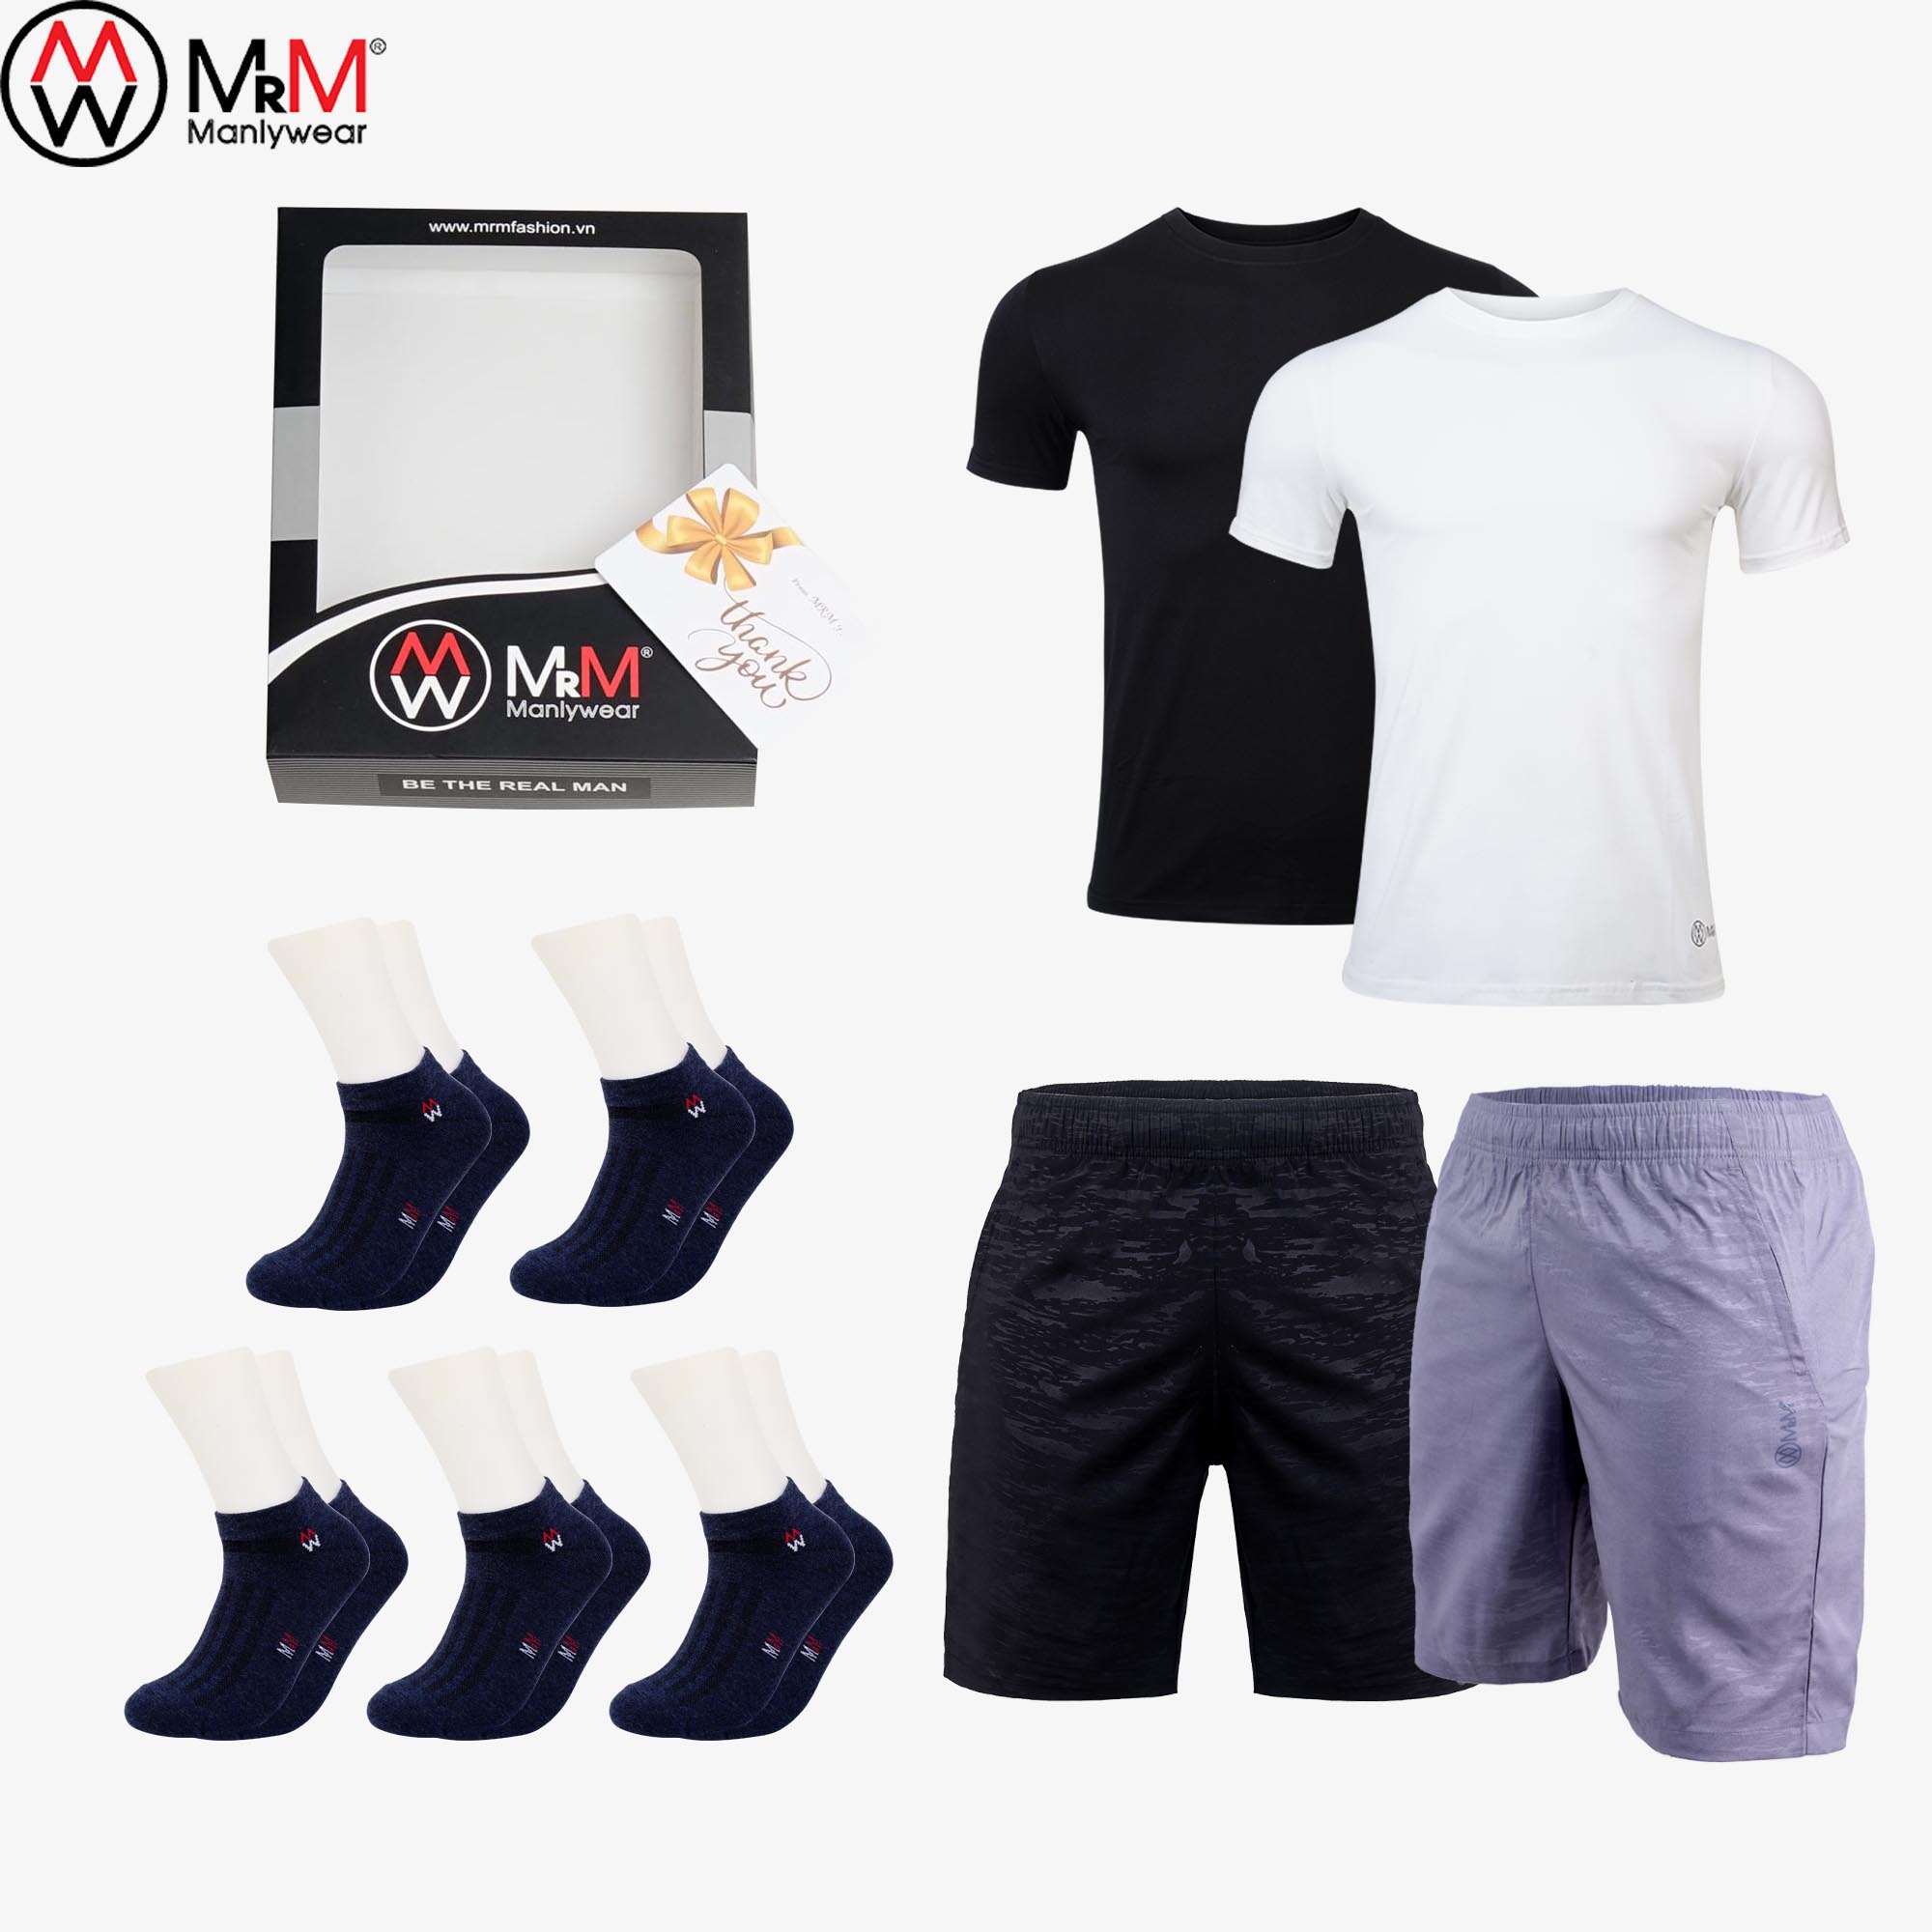 Elegant Box - 2 Áo thun nam, 2 quần short đùi nam rằn ri, 5 đôi tất nam cao cấp thương hiệu MRM Manlywear